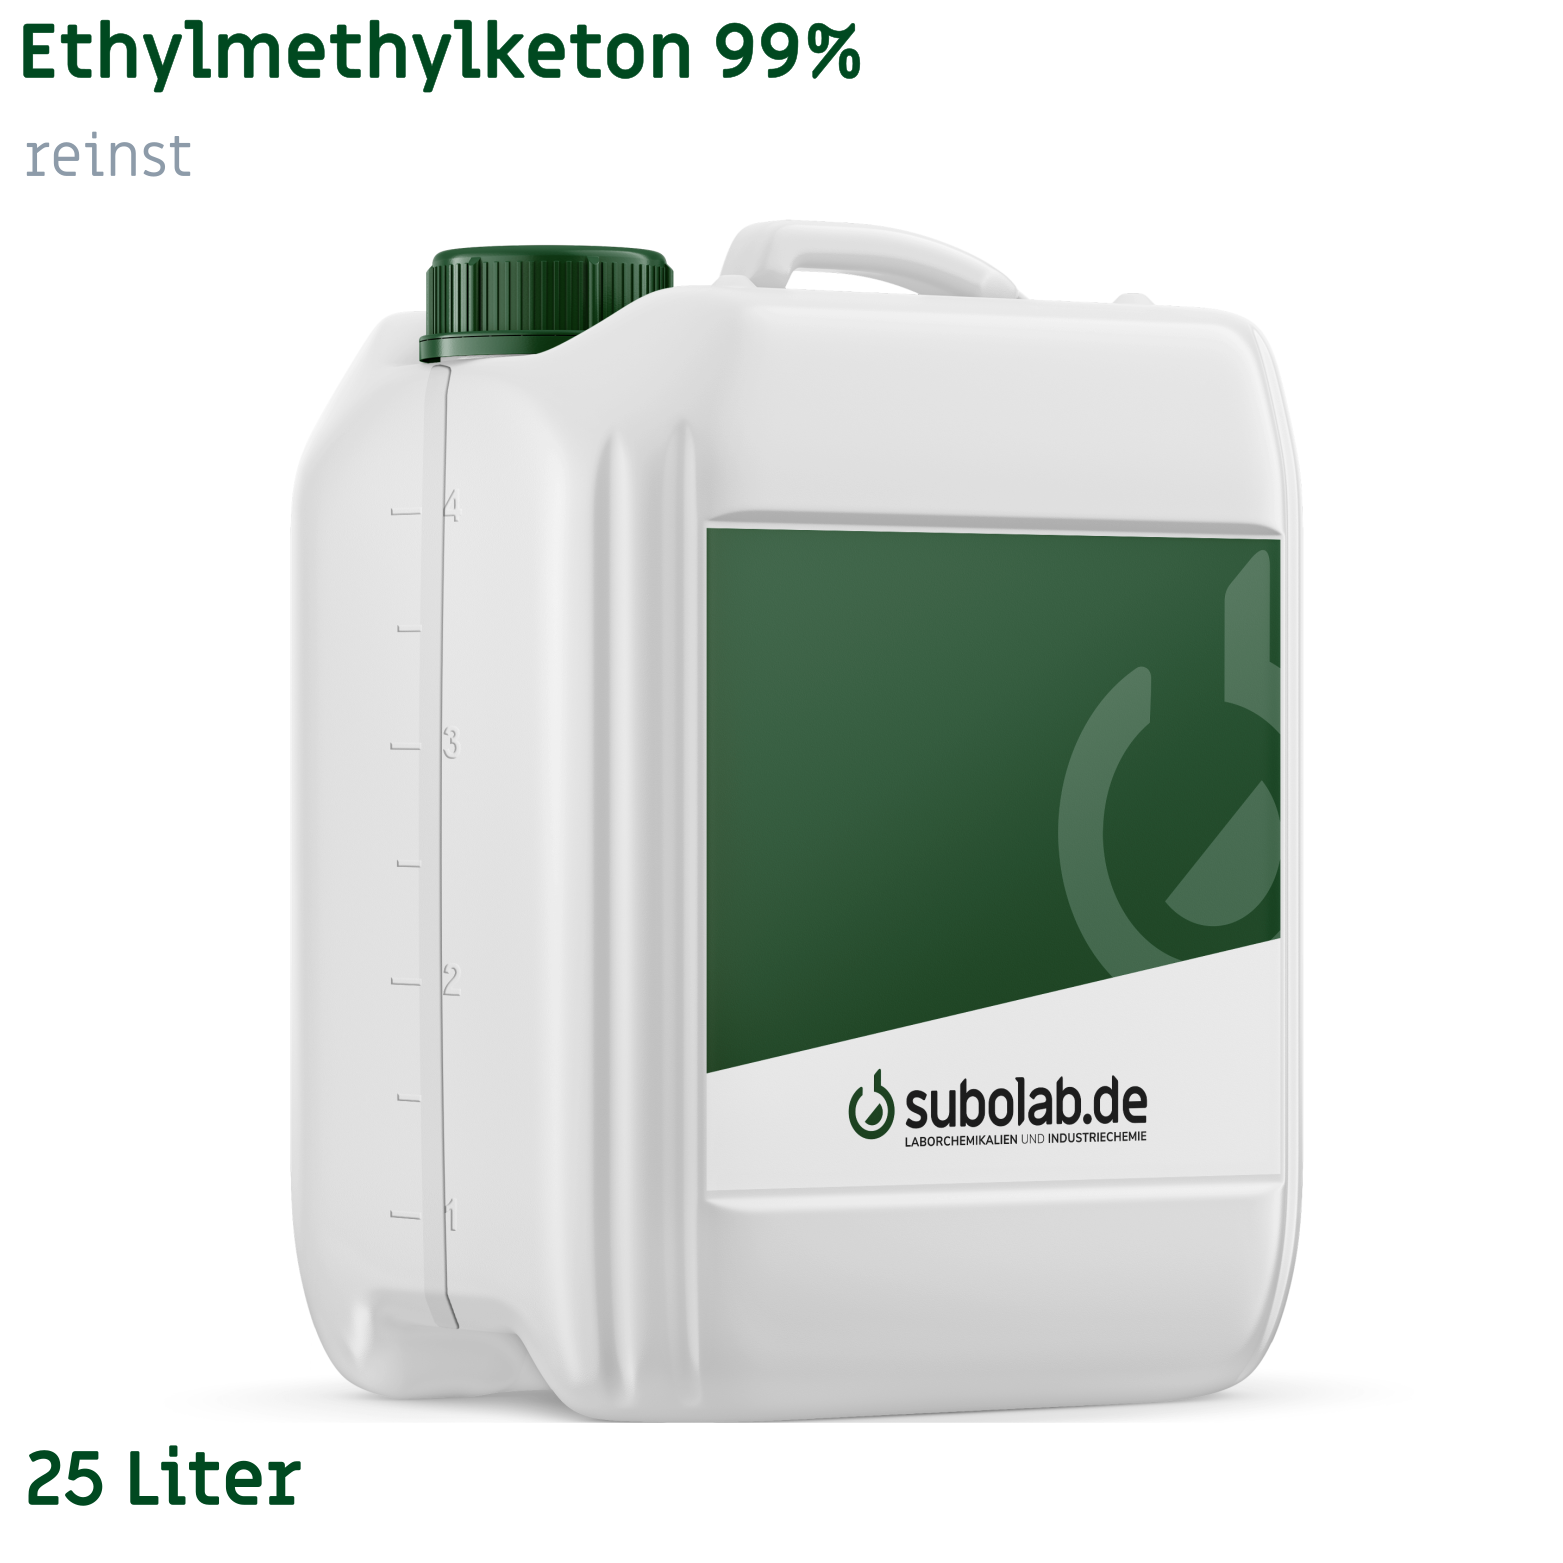 Bild von Ethylmethylketon 99% reinst (25 Liter)